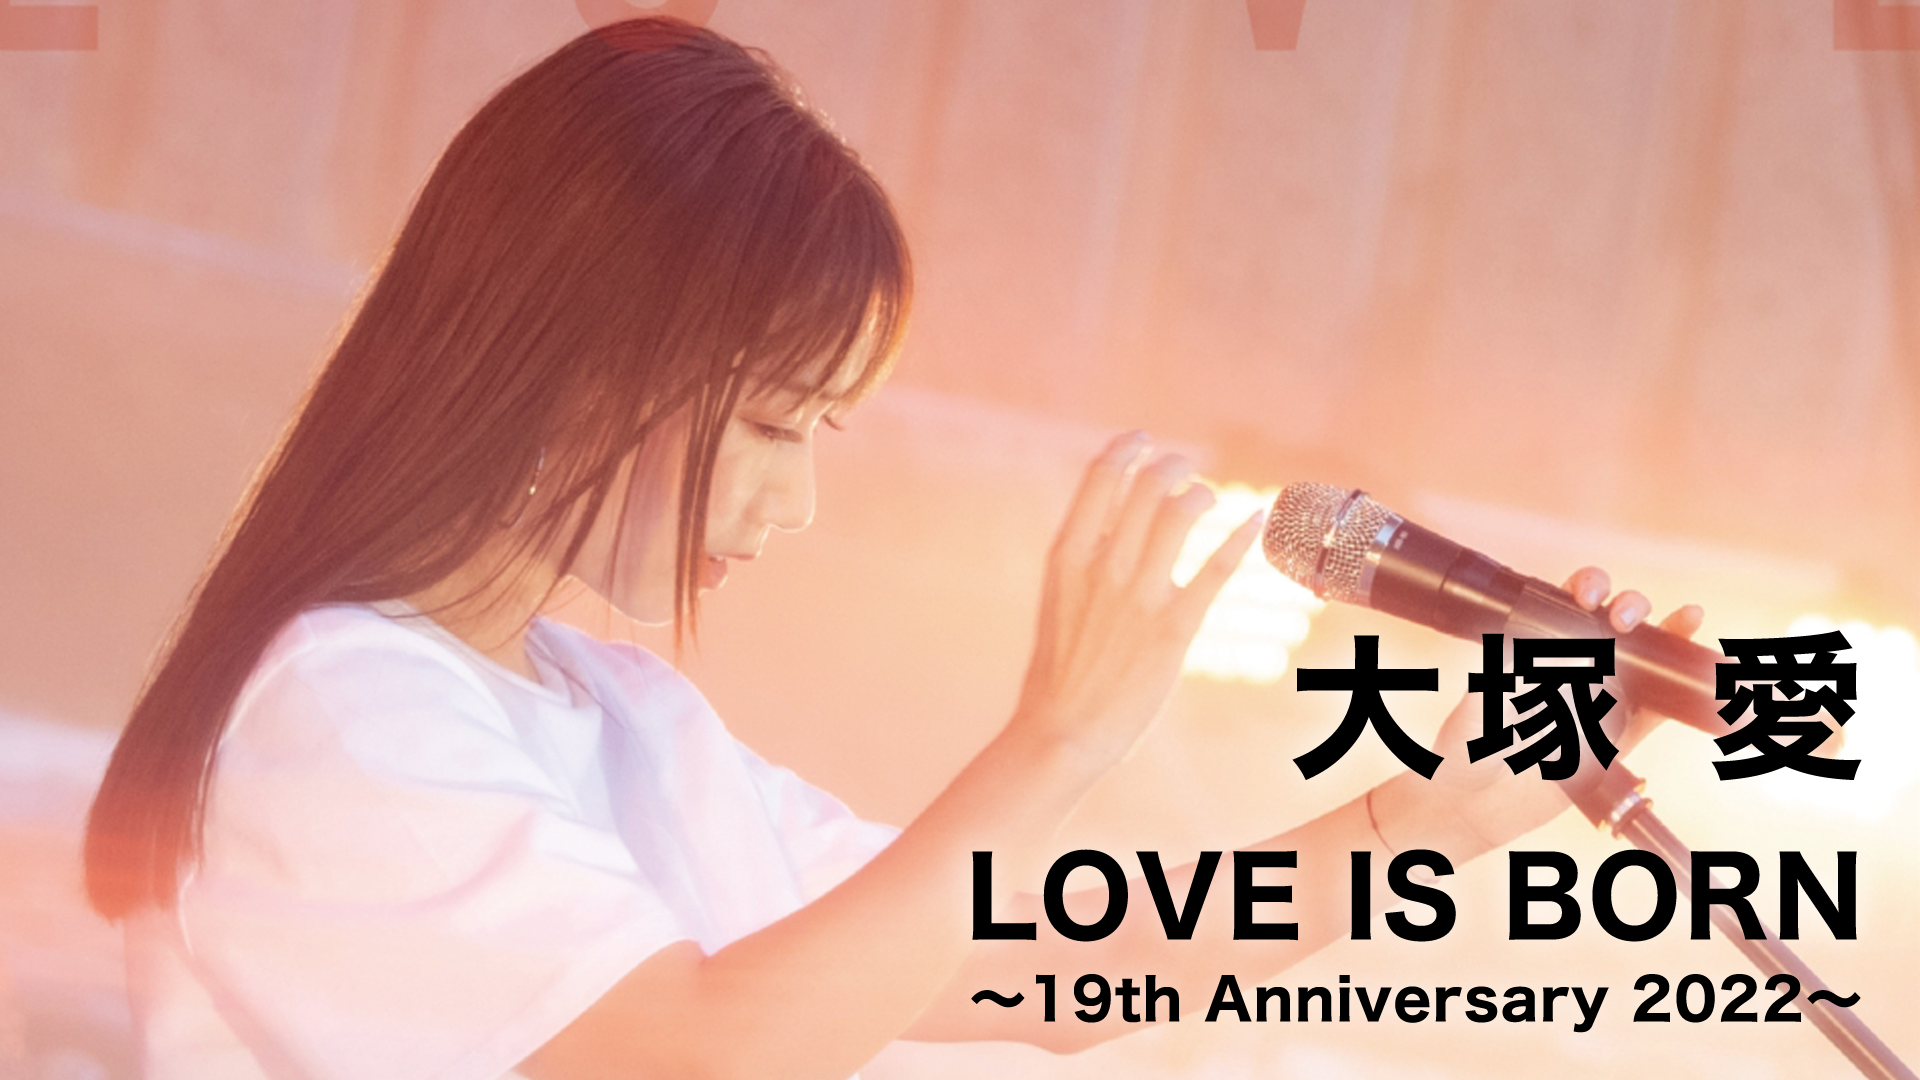 大塚 愛 【LOVE IS BORN】 ～5th Anniversary 2008～ at Osaka-Jo Yagai Ongaku-Do on  10th of September 2008(音楽・アイドル / 2008) - 動画配信 | U-NEXT 31日間無料トライアル